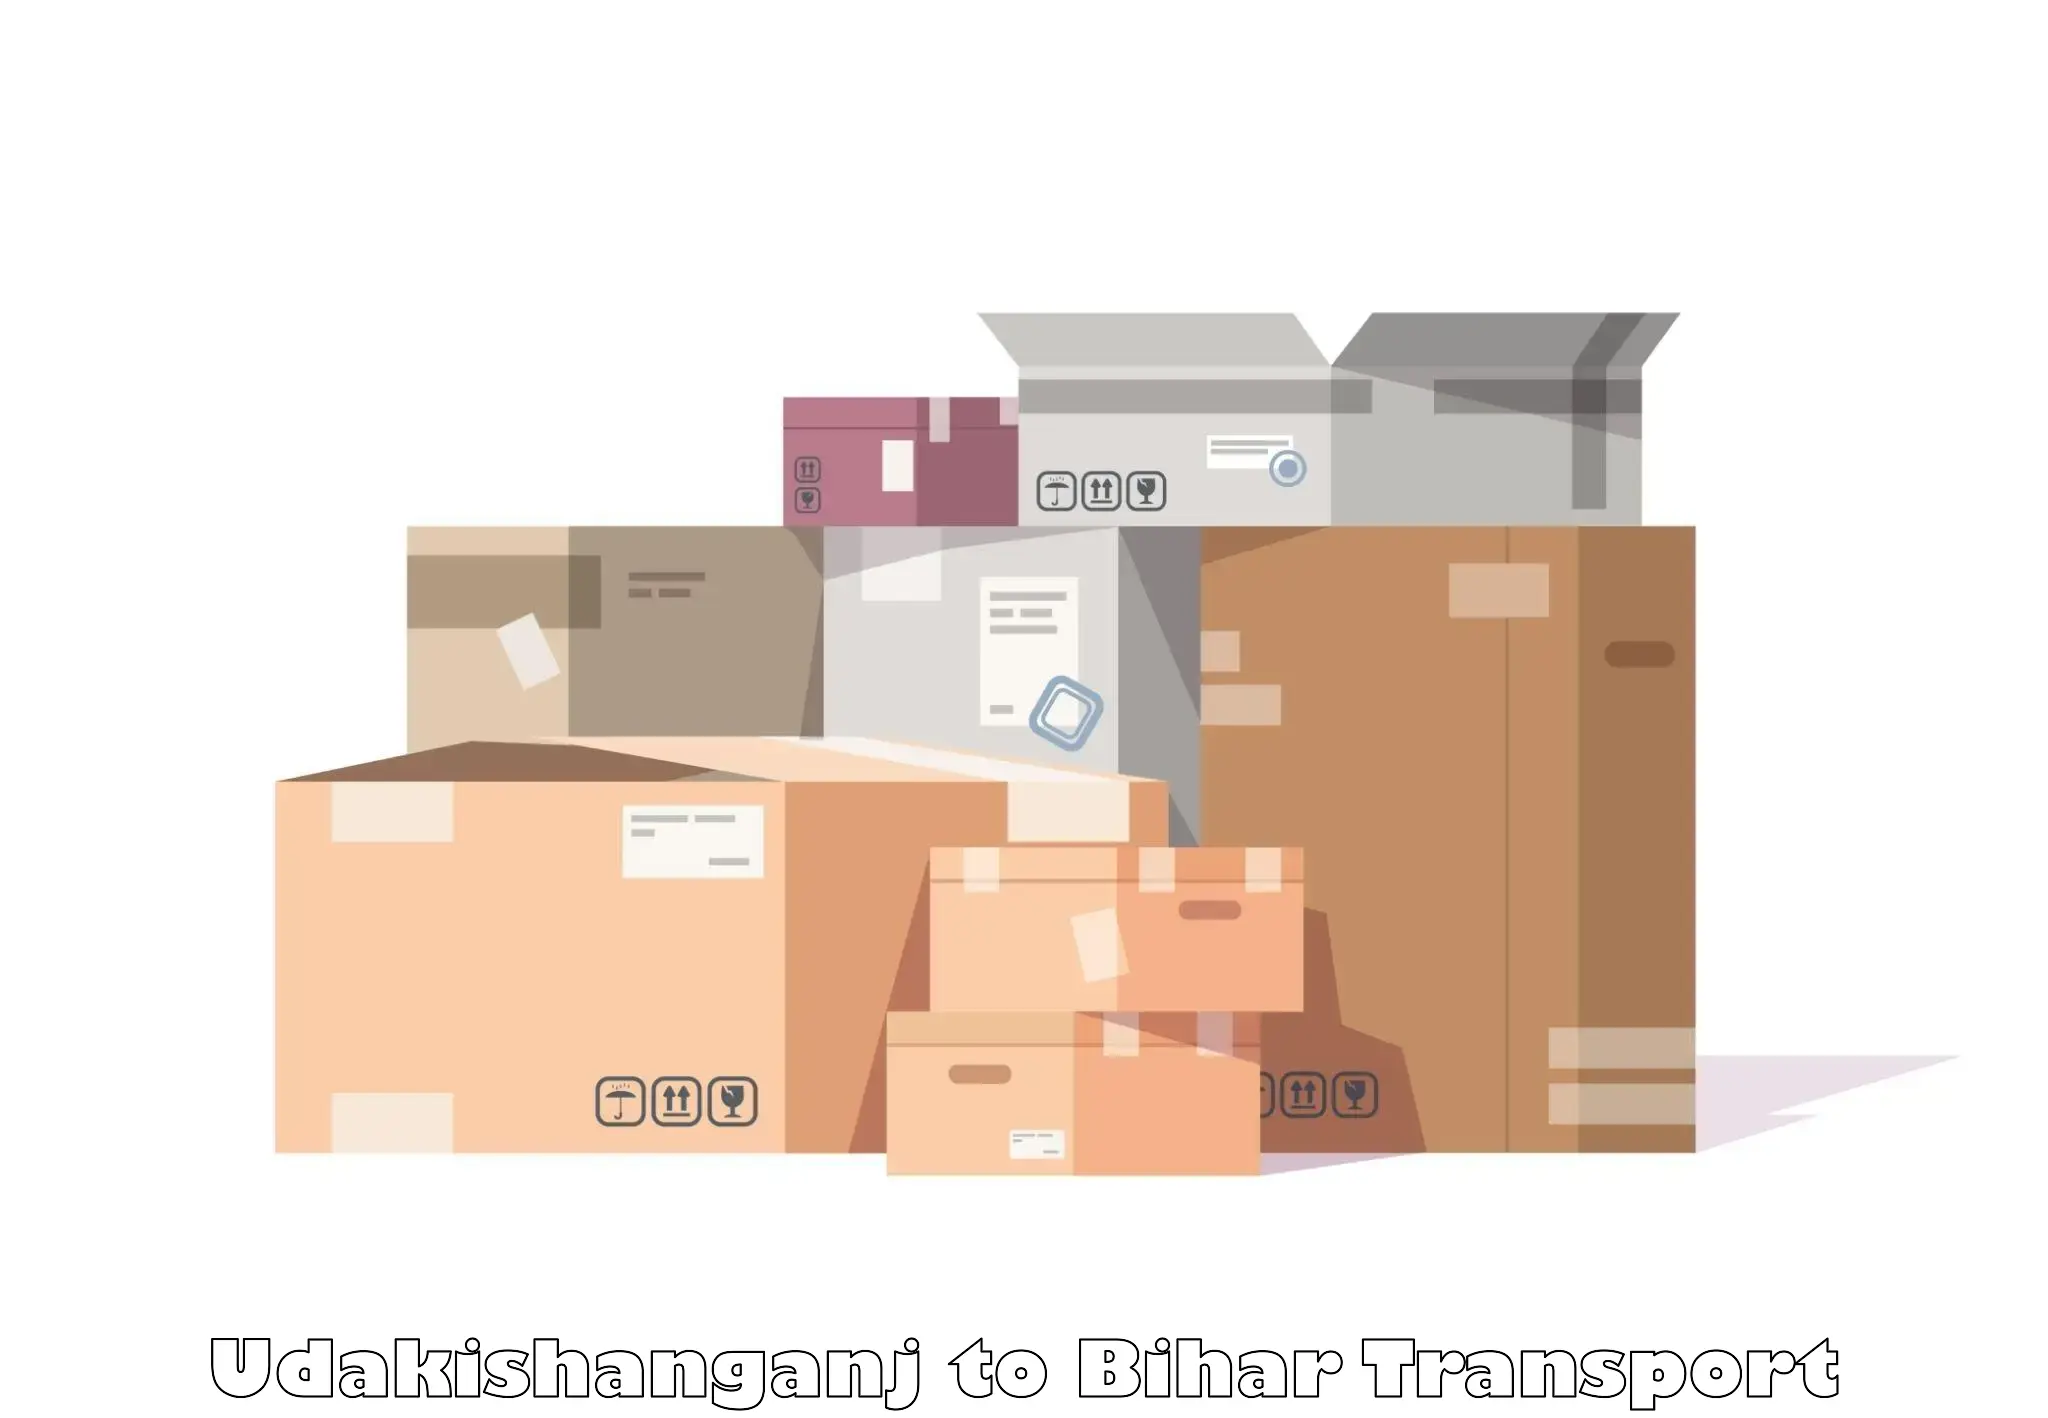 Shipping services Udakishanganj to Sangrampur